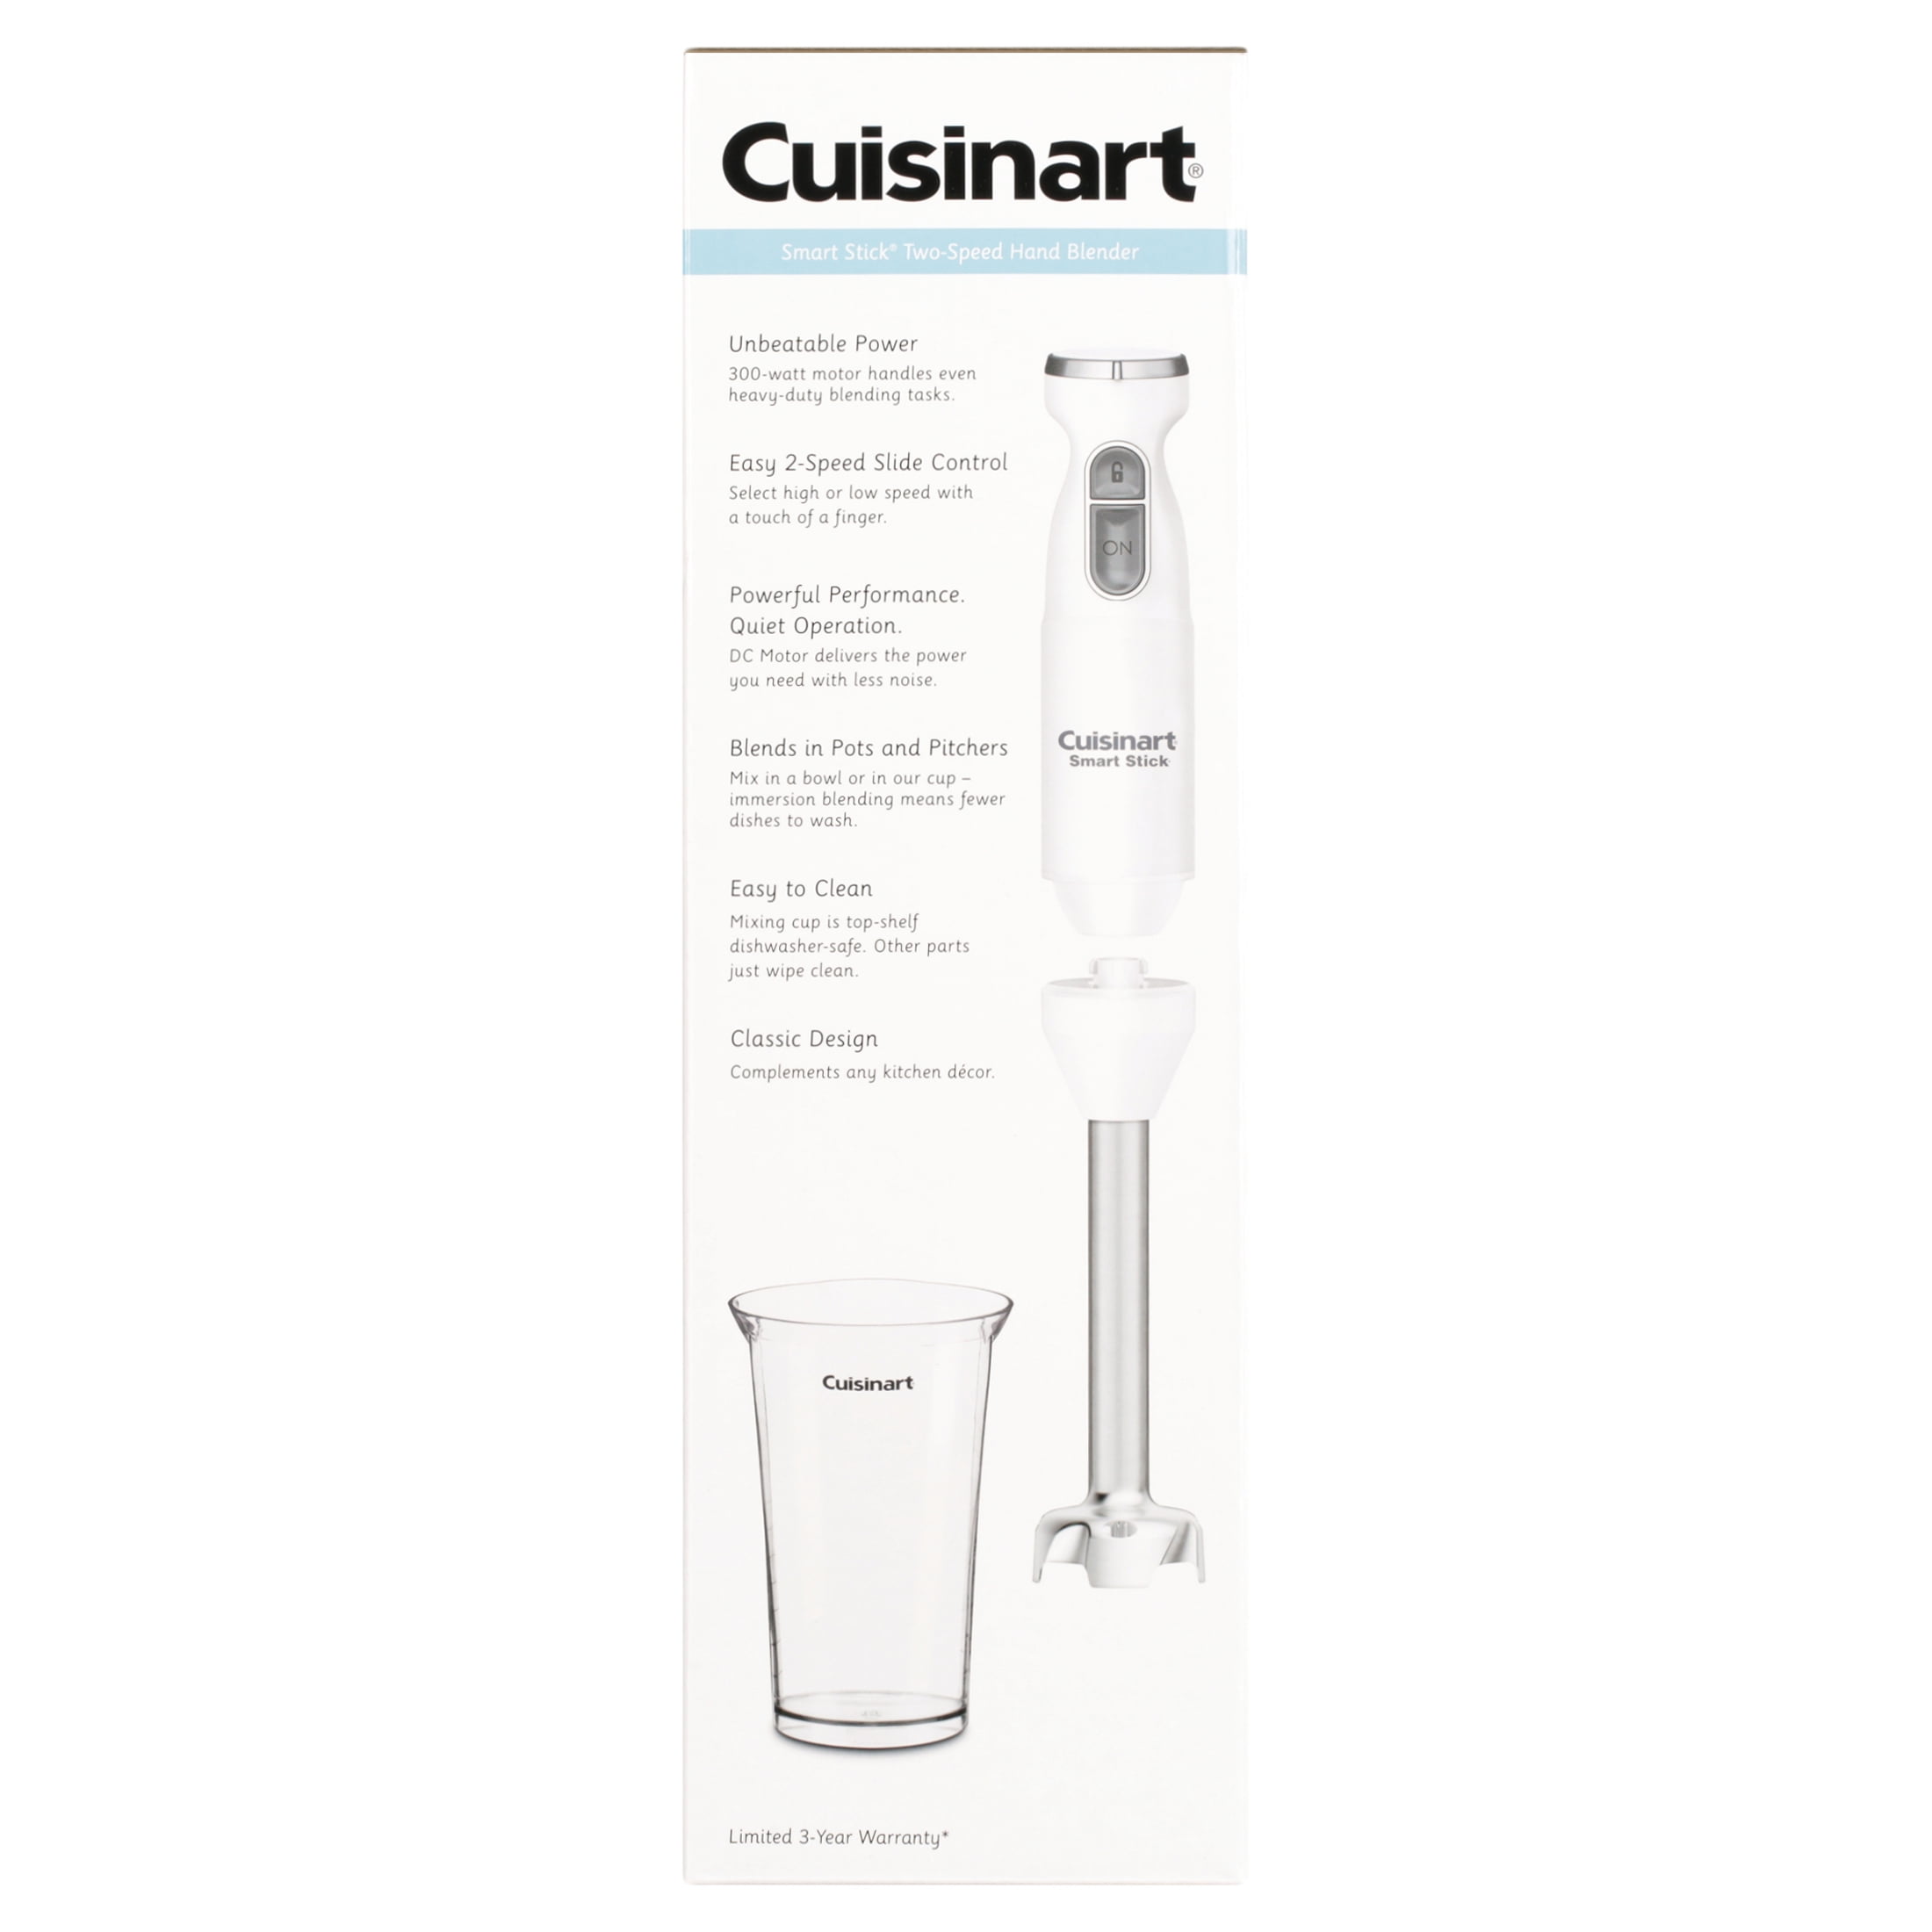 Dehydrator Resource: Cuisinart Smart Stick 2-Speed Hand Blender